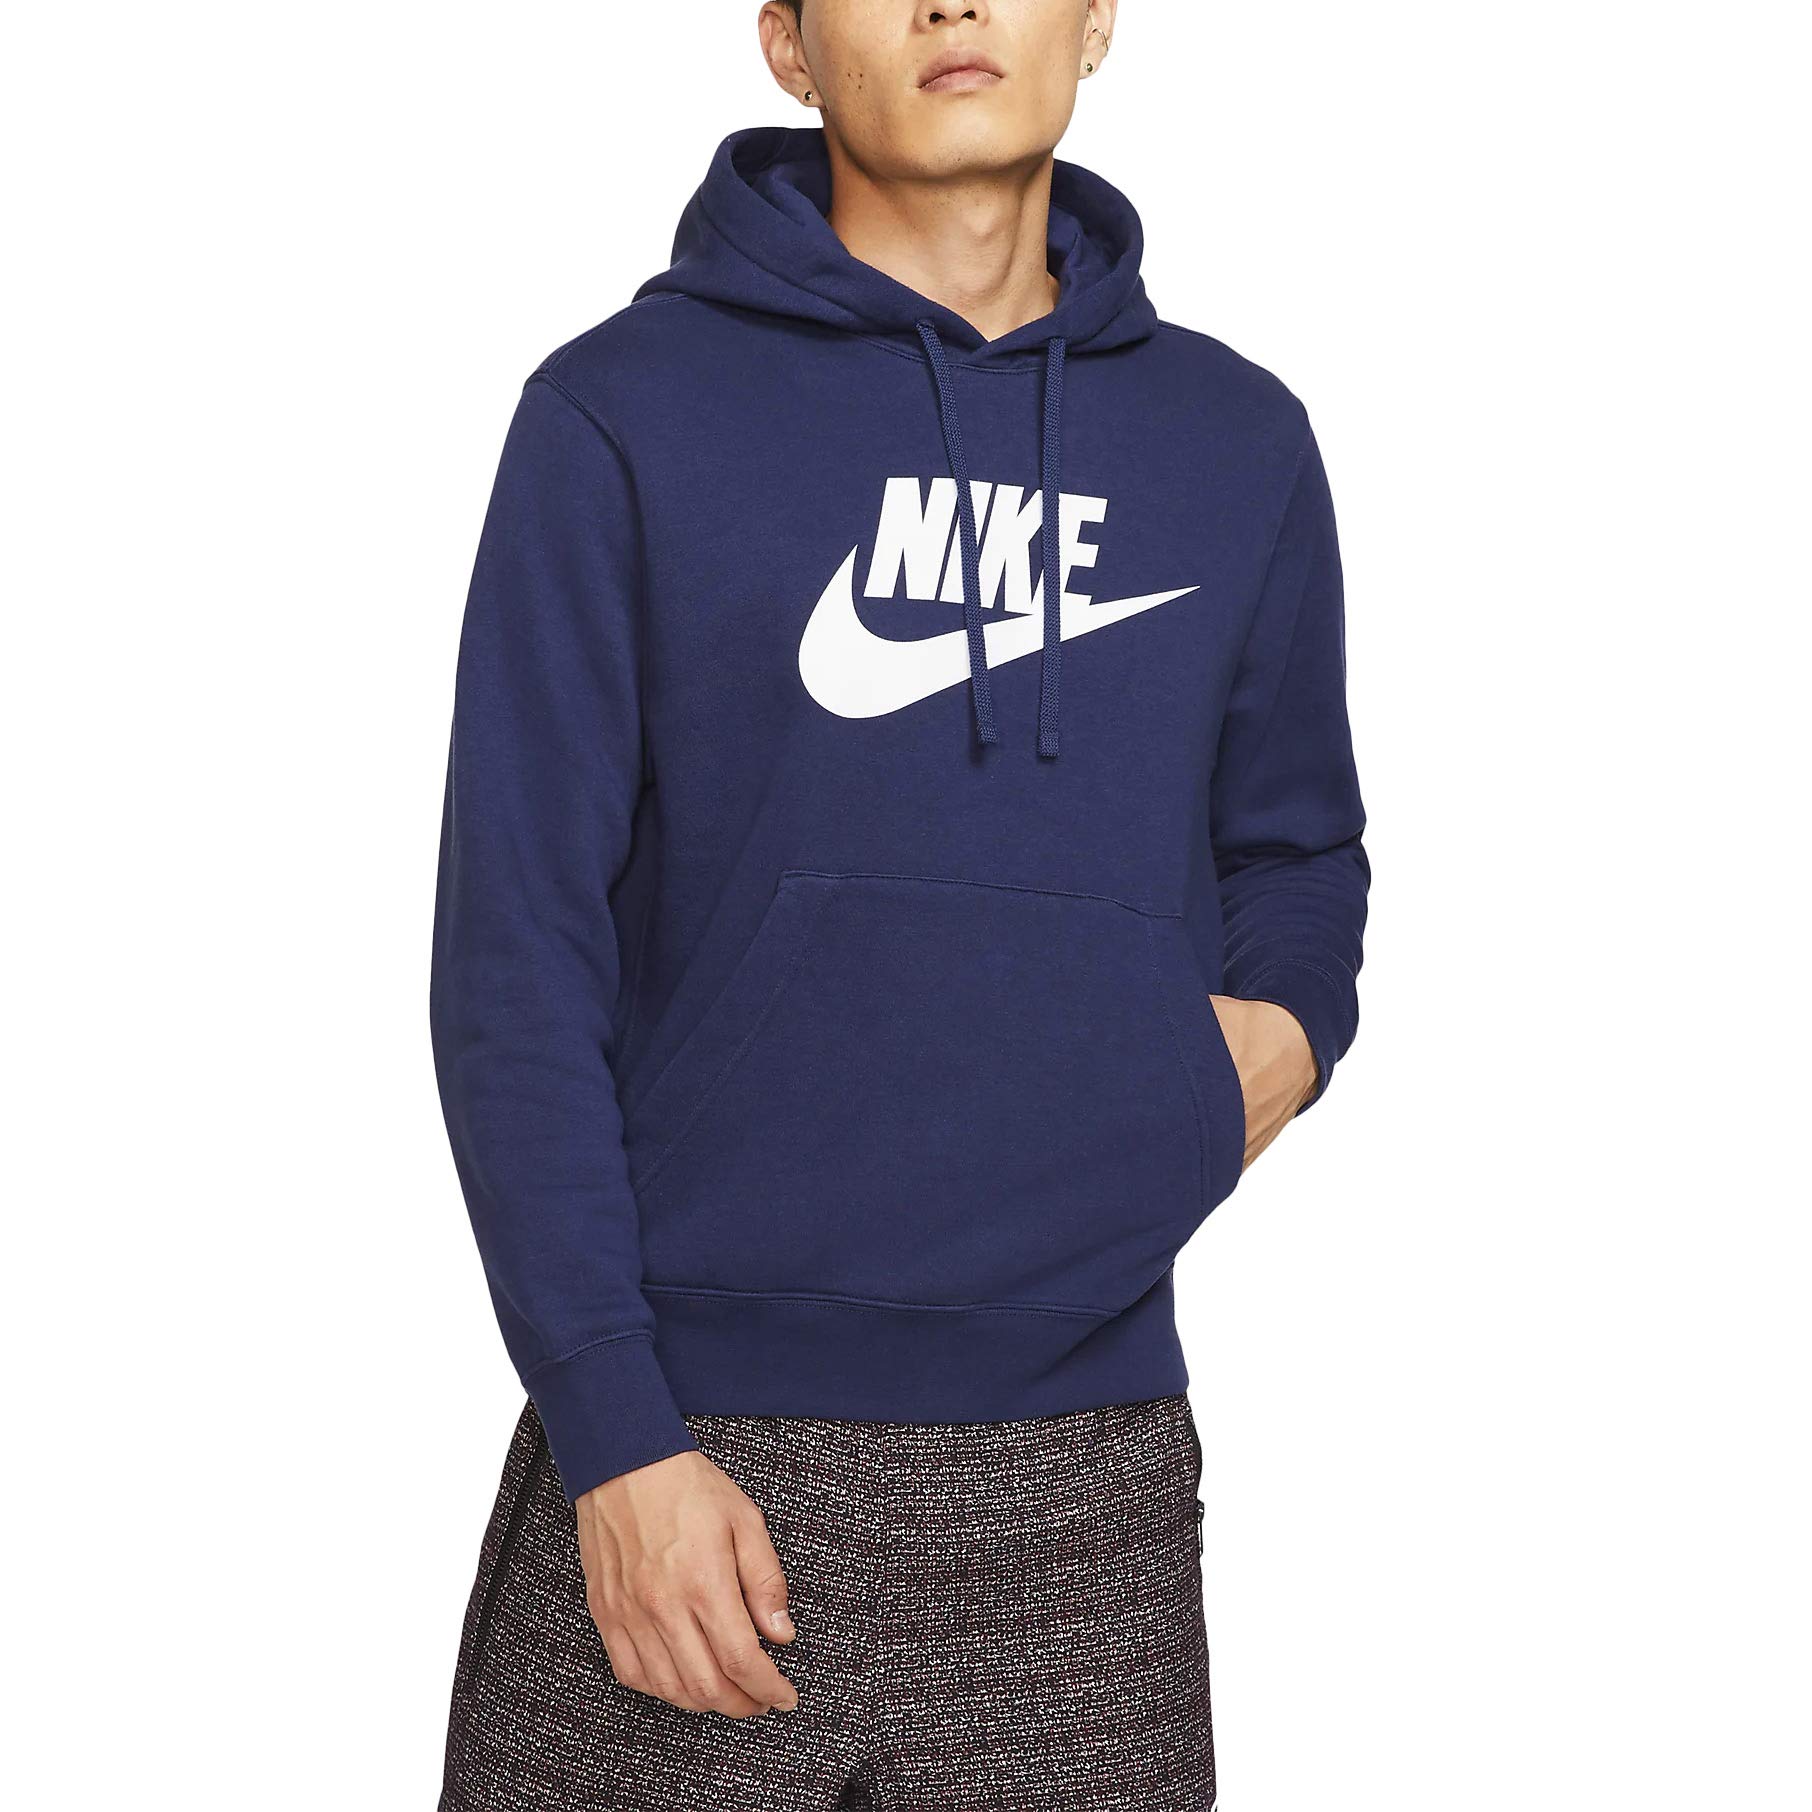 Nike Herren Sportswear Club Fleece Kapuzenpullover, Blau/Weiß (Midnight Navy/Midnight Navy/White), L